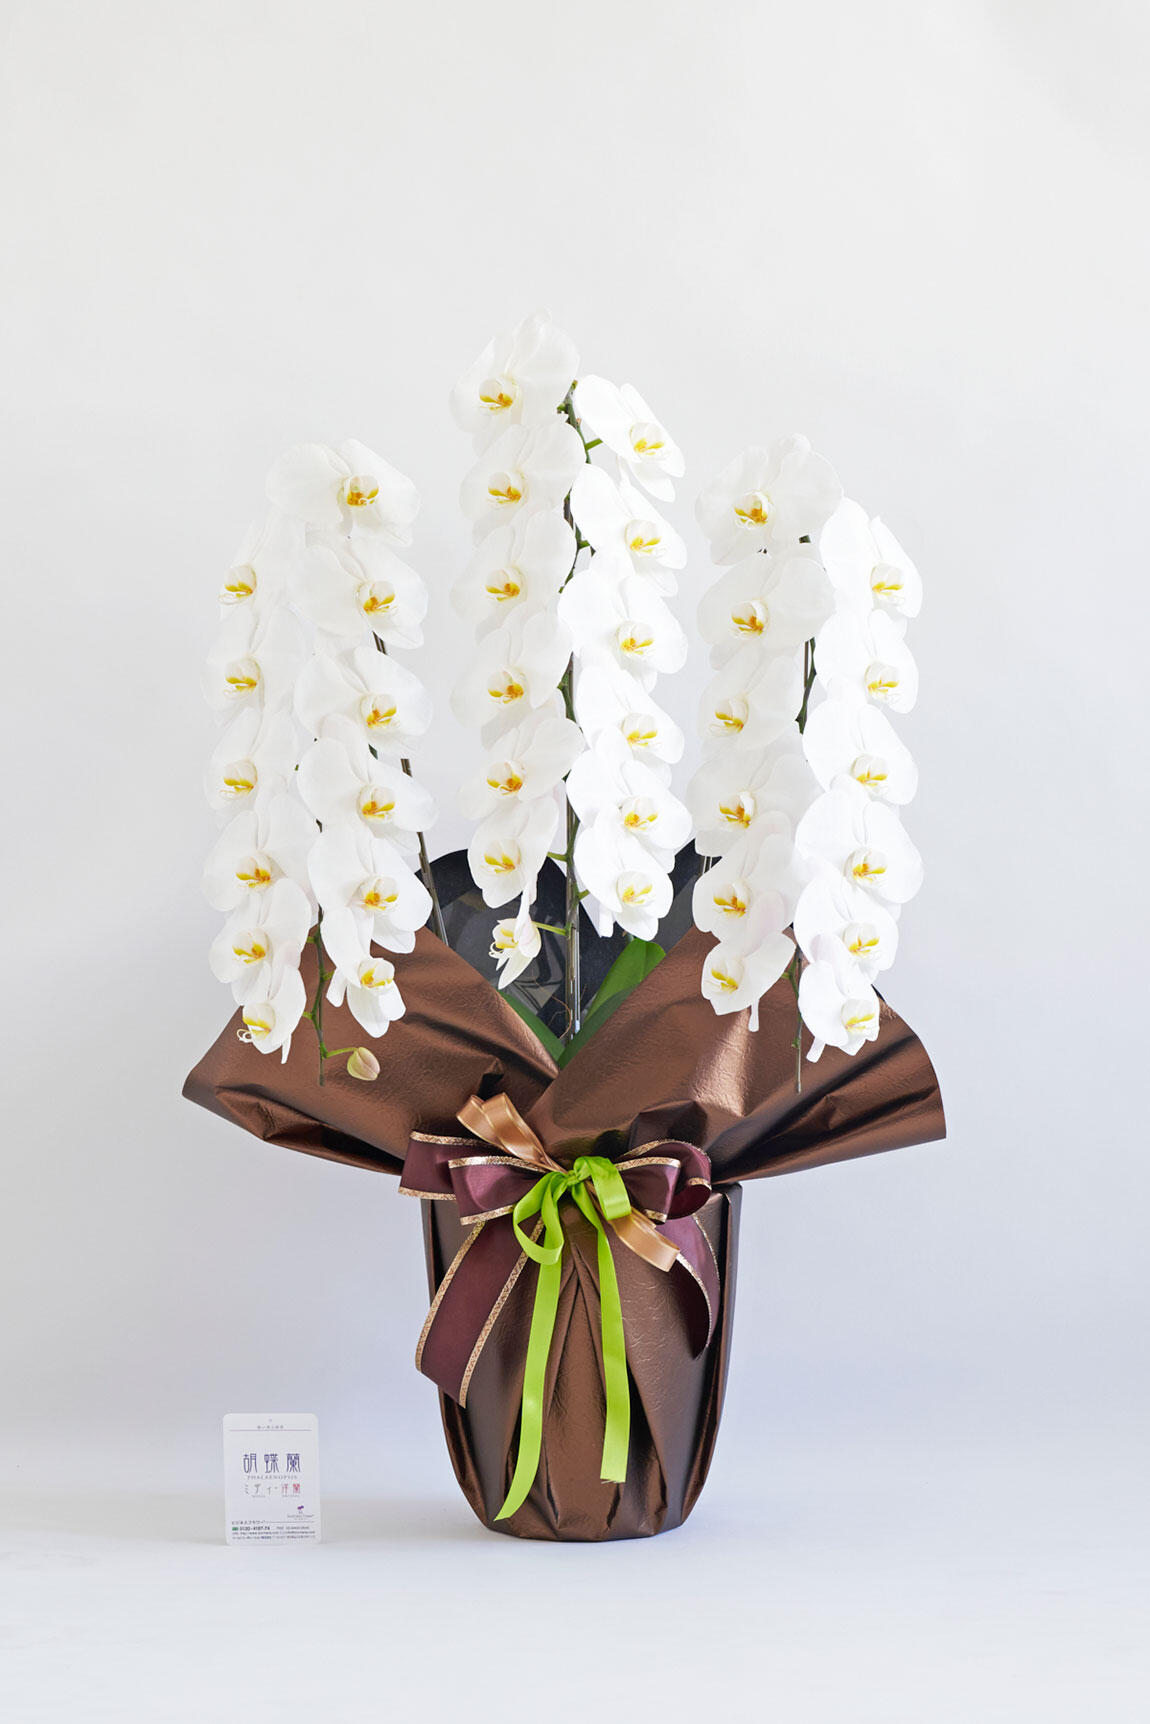 <p>開店祝い、開院祝い、開業祝い、就任祝いなどの定番お祝い花胡蝶蘭にチョットしたお洒落感を施した、こだわりラッピング胡蝶蘭シリーズの商品です。</p>